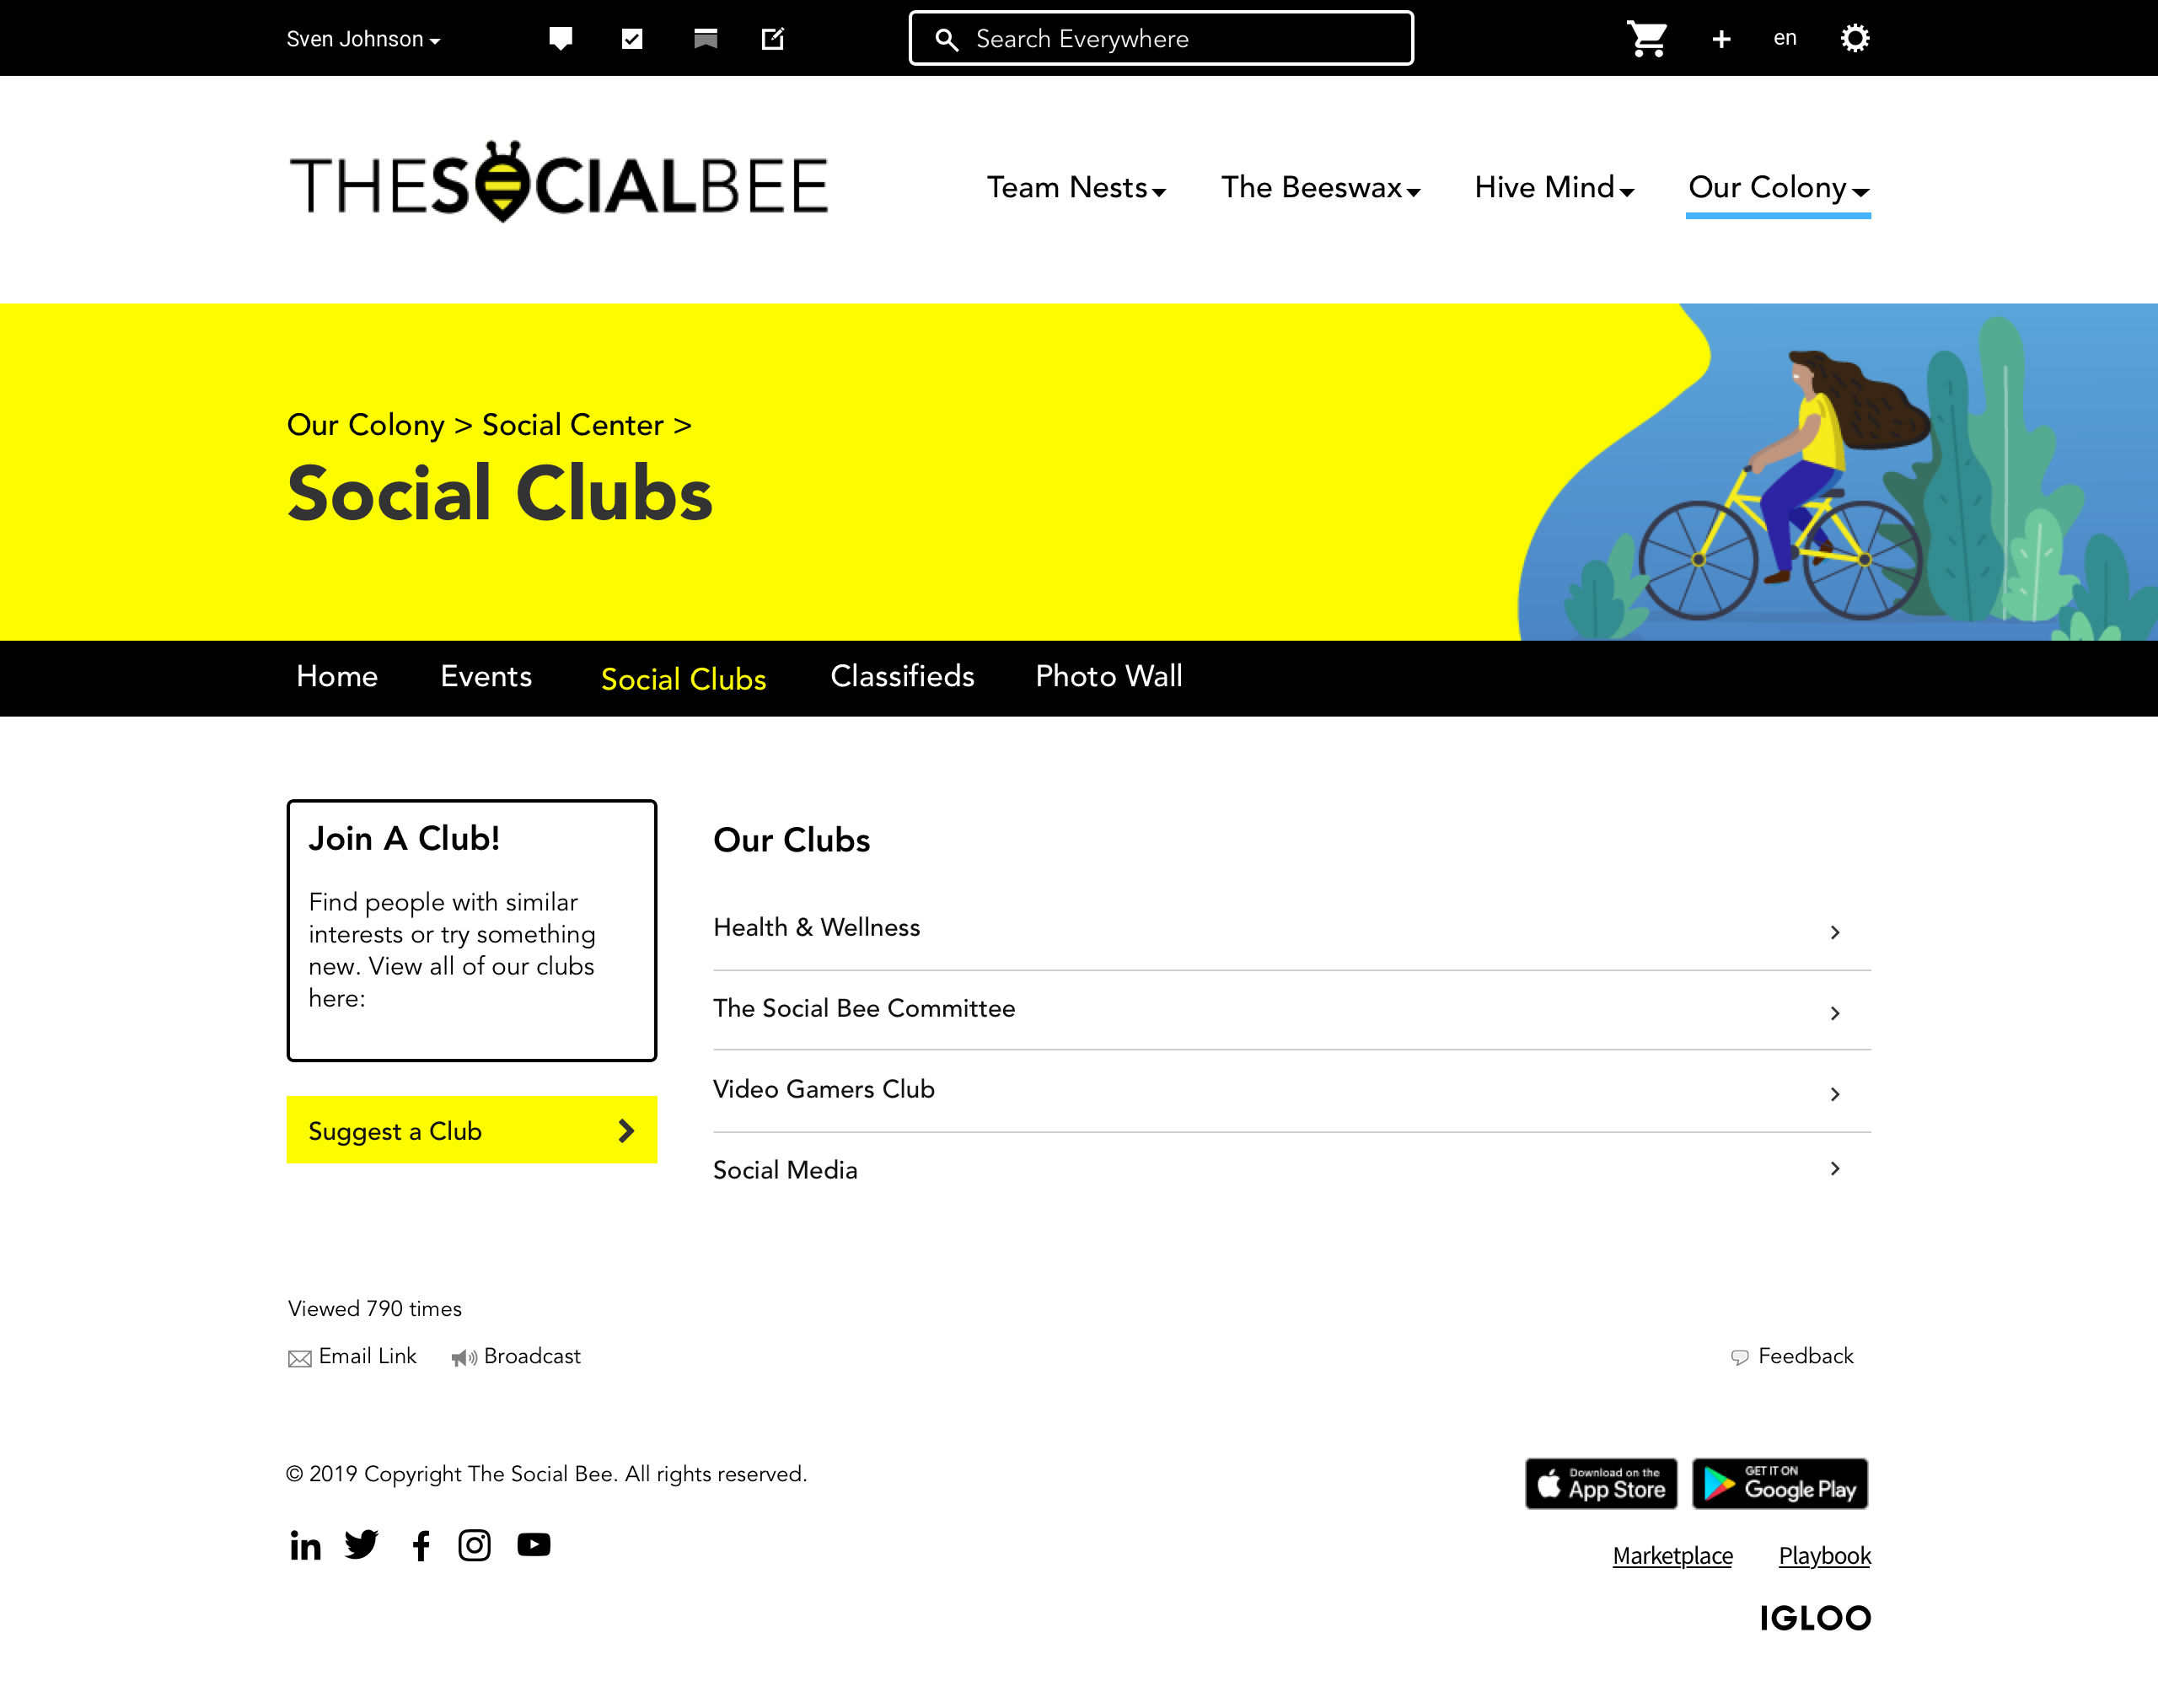 Social Center Clubs